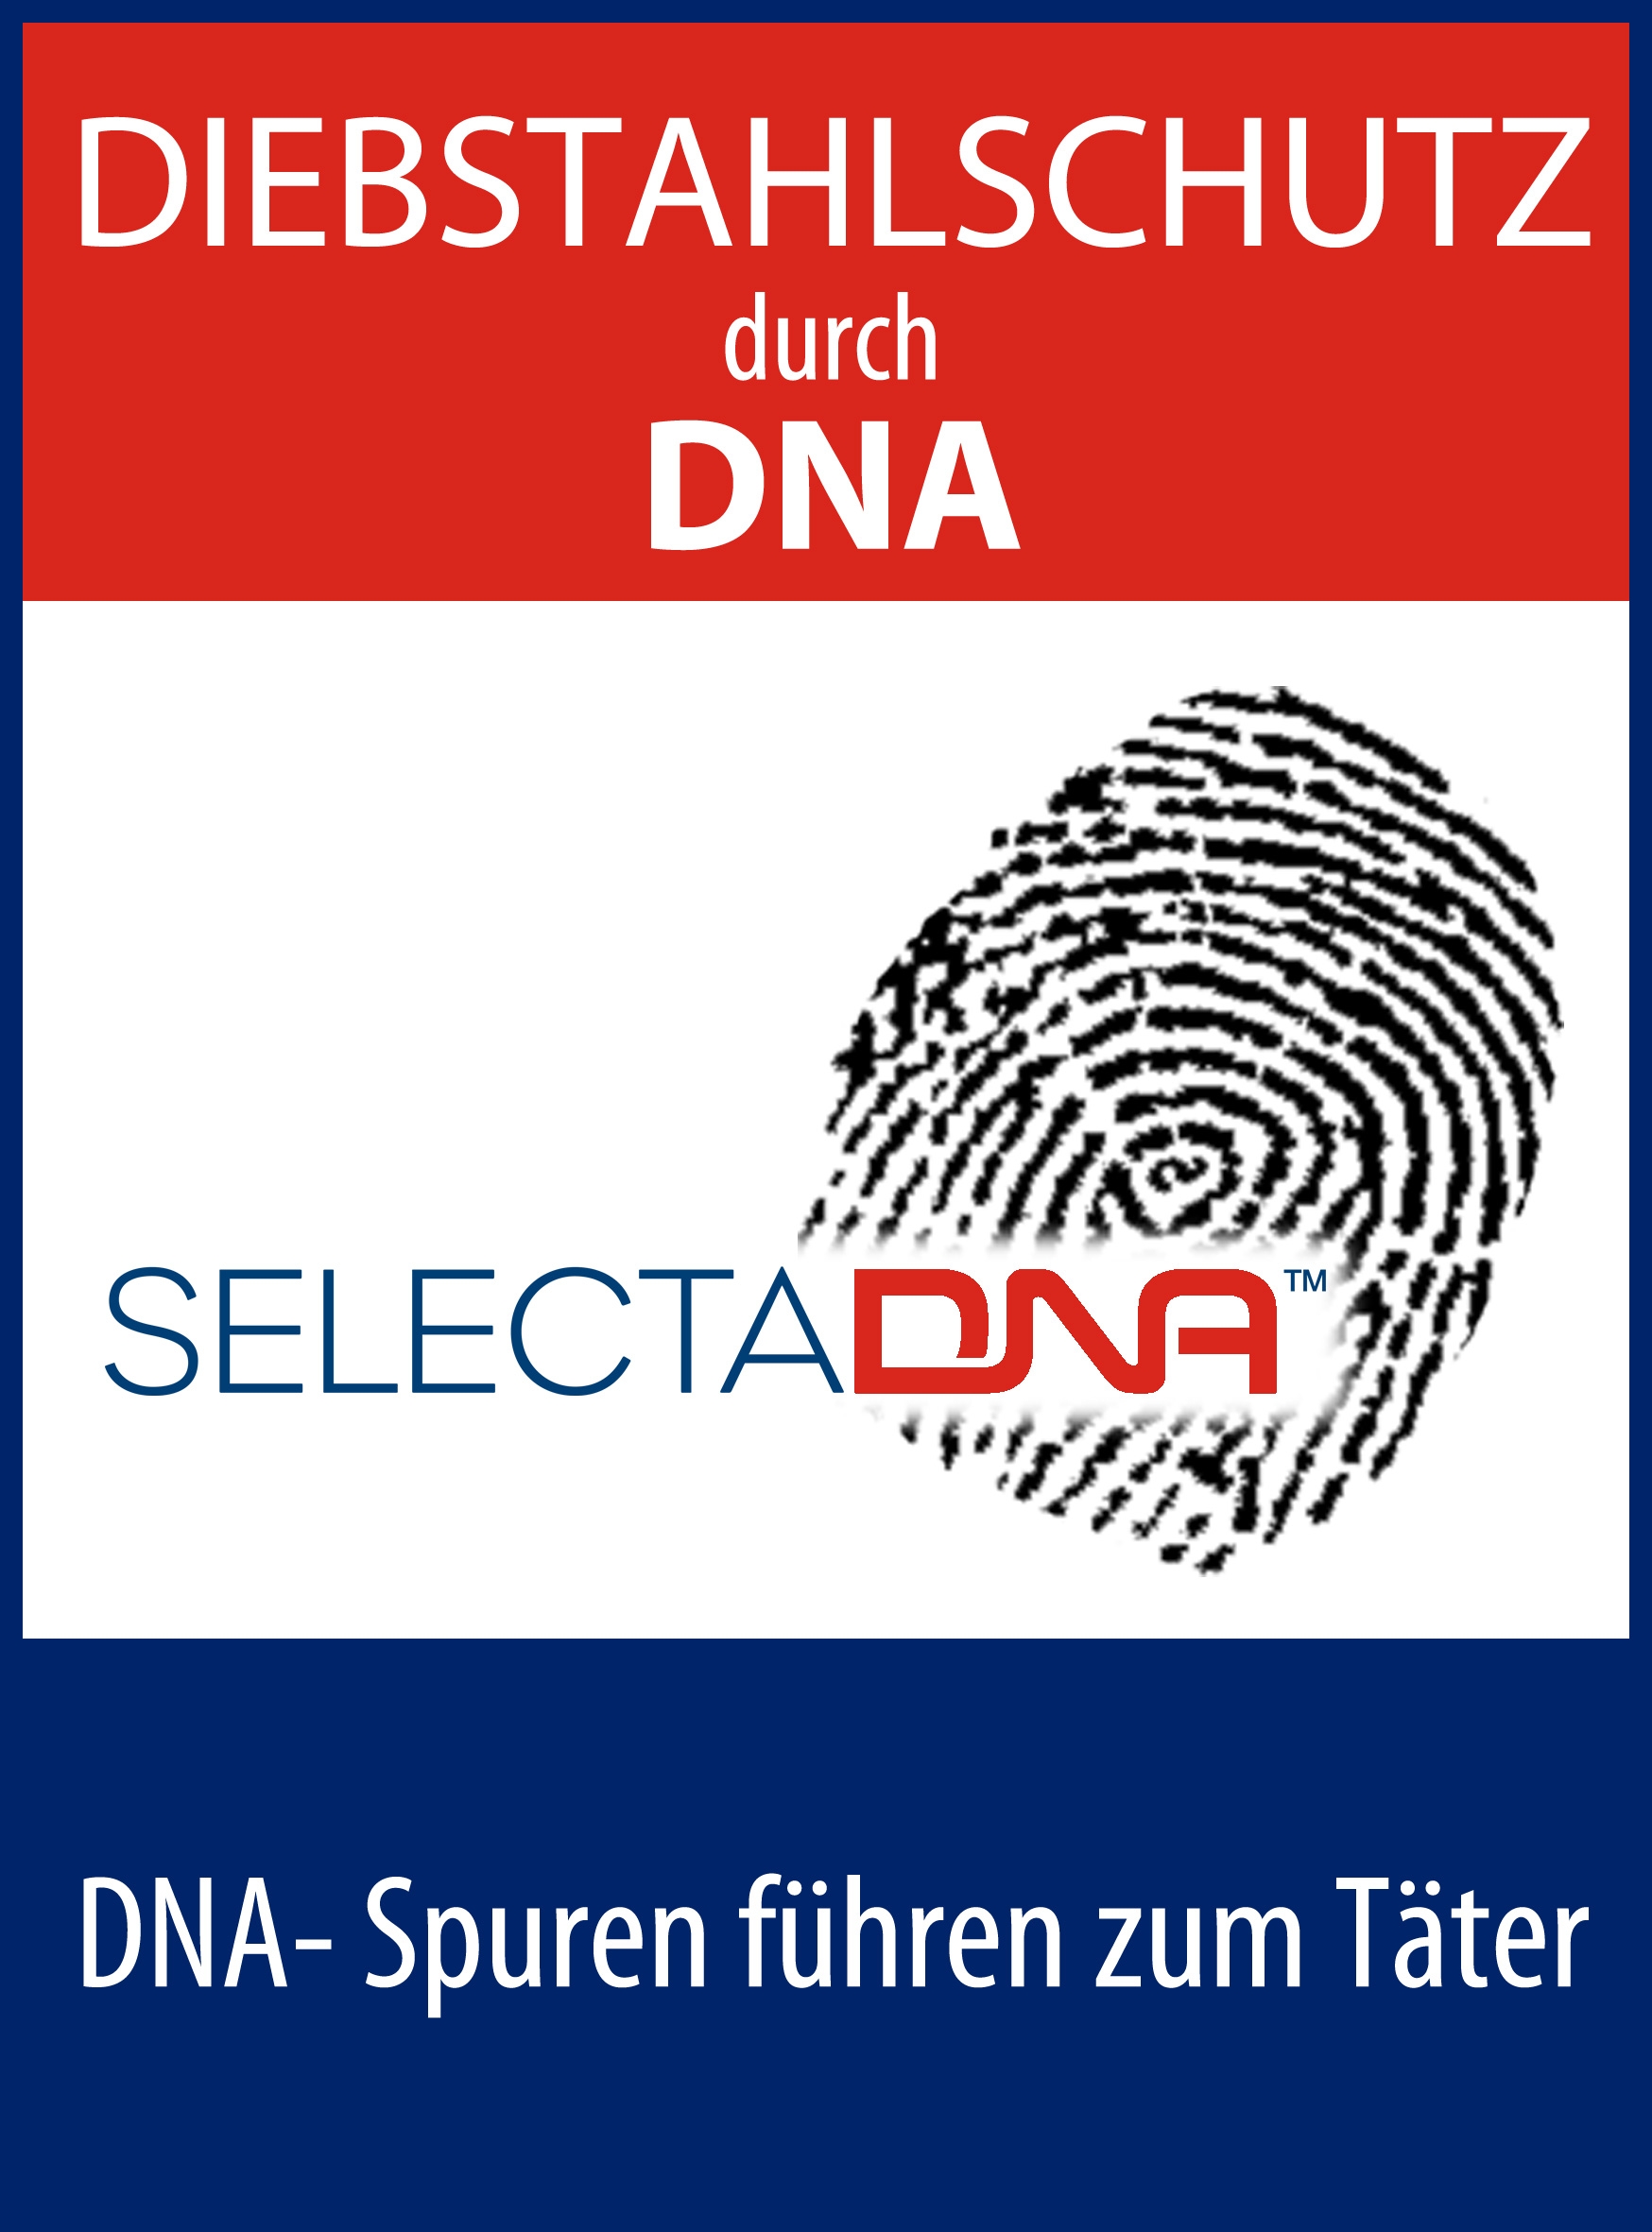 5 Sticker Objekt mit künstlicher DNA gesichert 50 mm künstliche DNA 